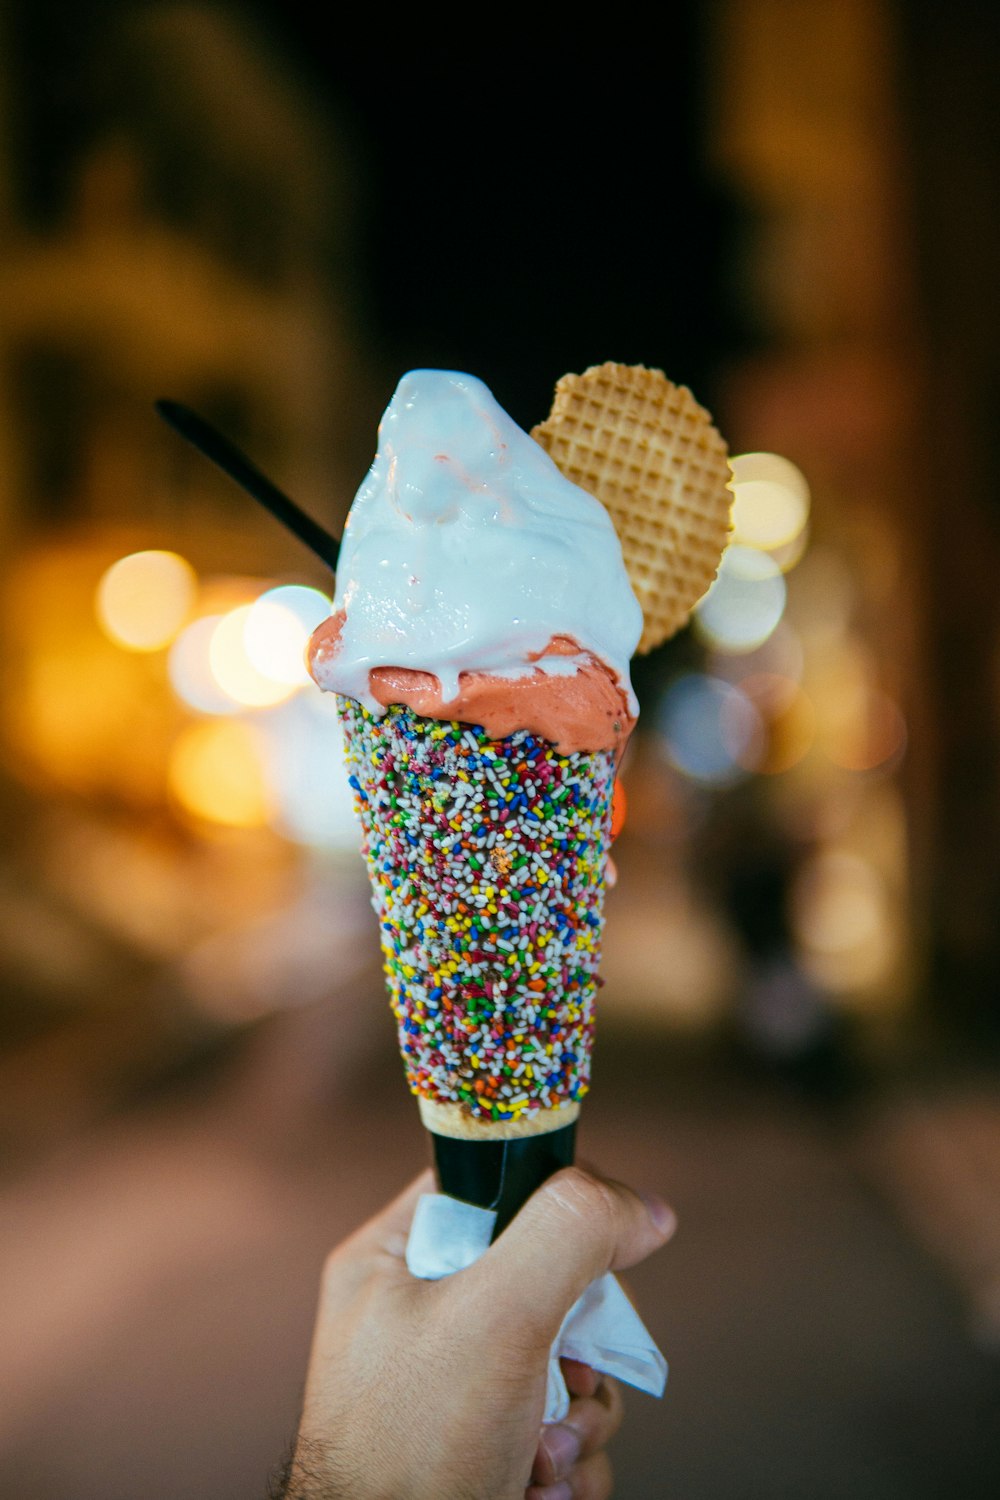 pessoa segurando cone de sorvete polvilhado multicolorido com sorvete sabor baunilha